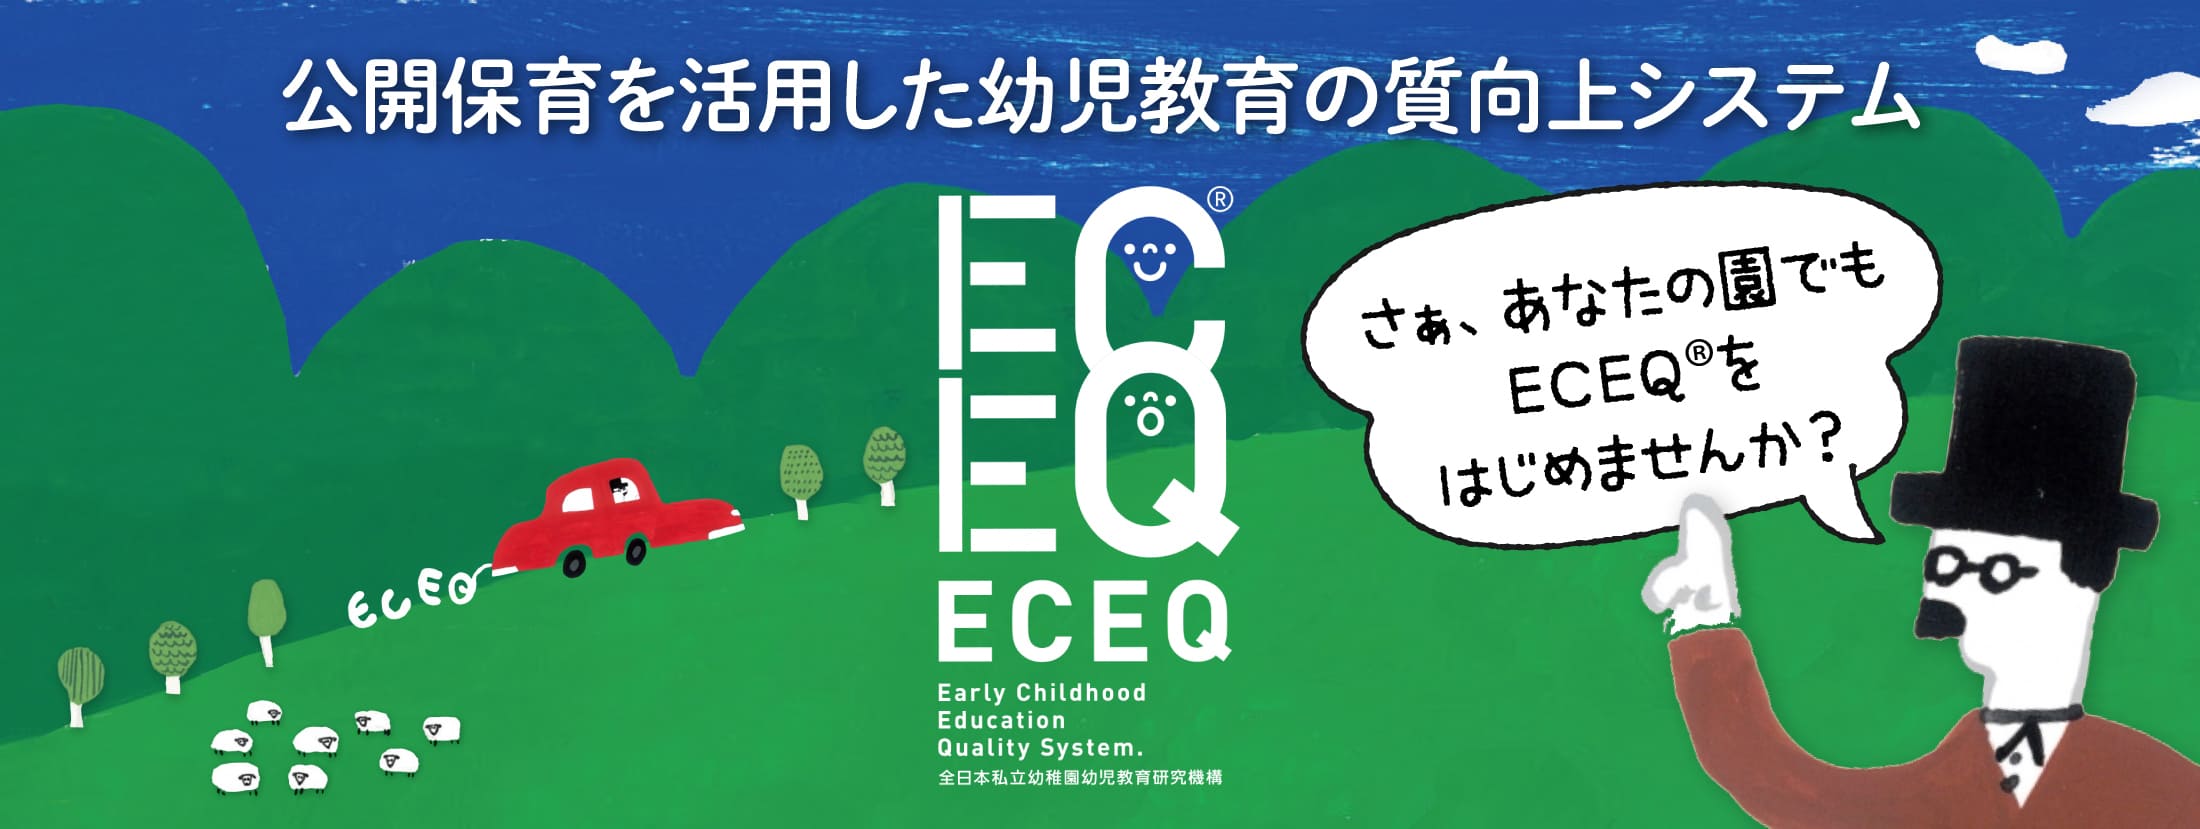 トップページのECEQの画像